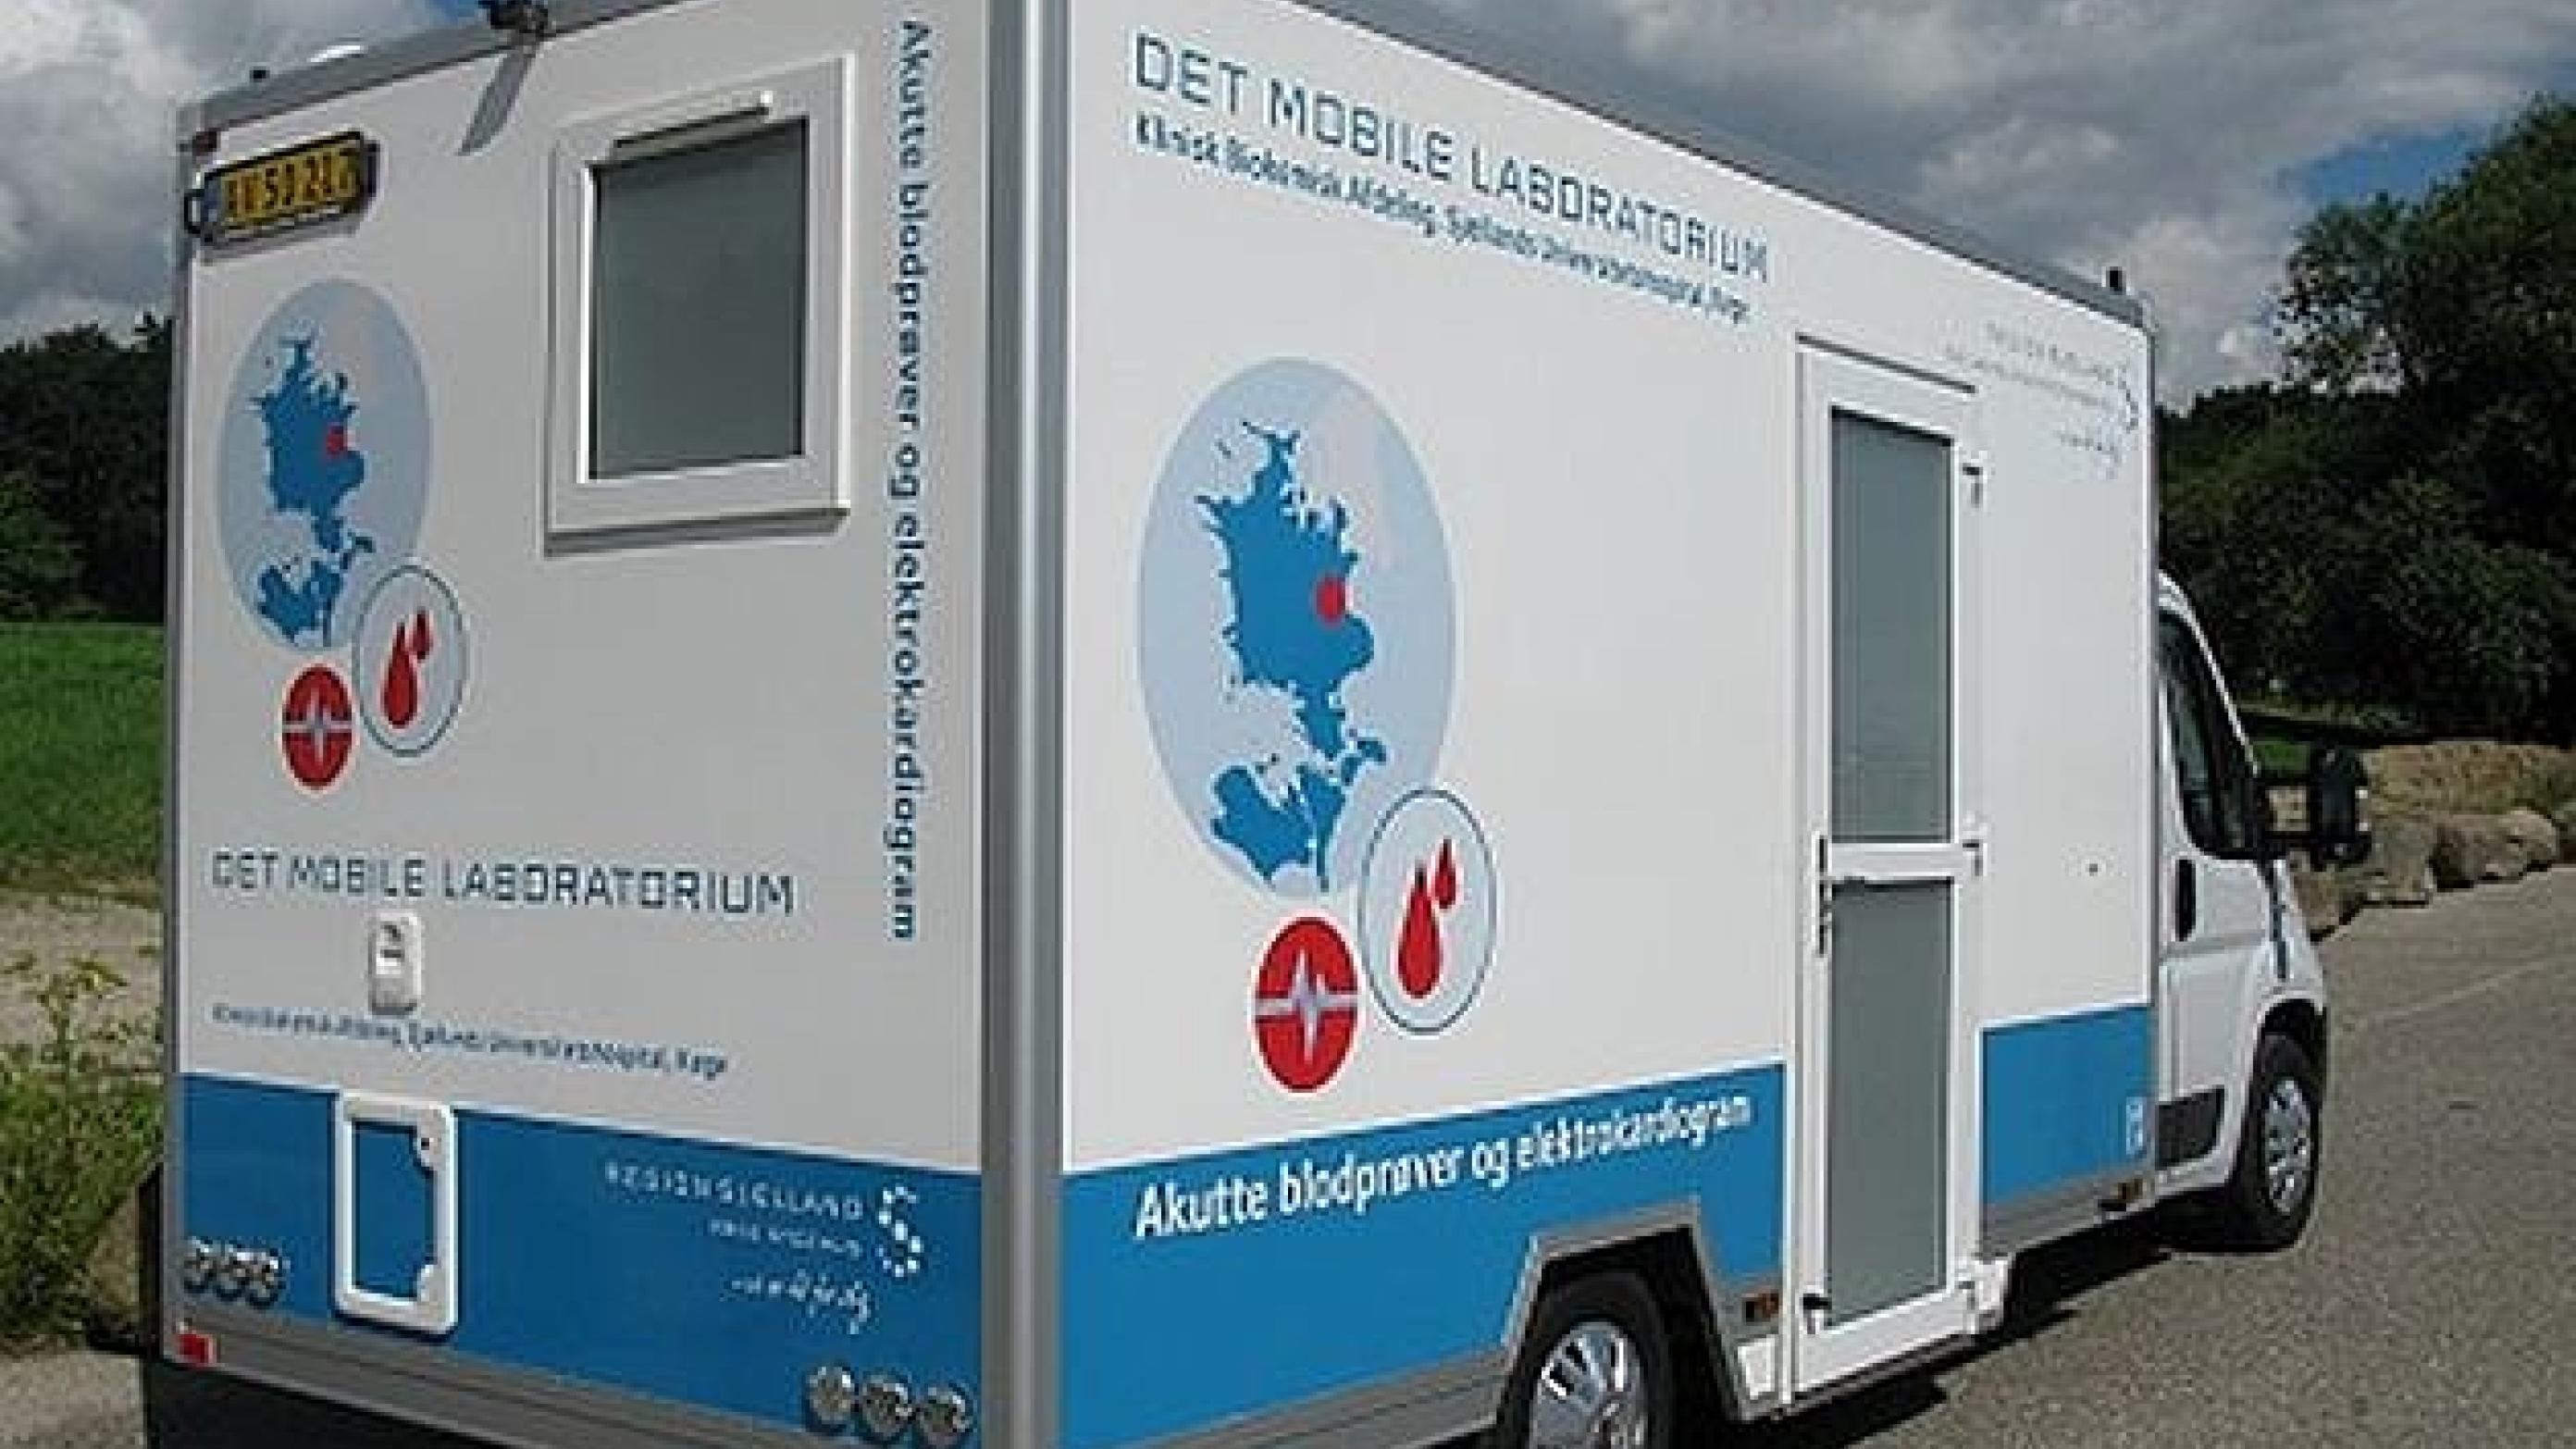 Det mobile laboratorium på landevejen. Foto: Region Sjælland